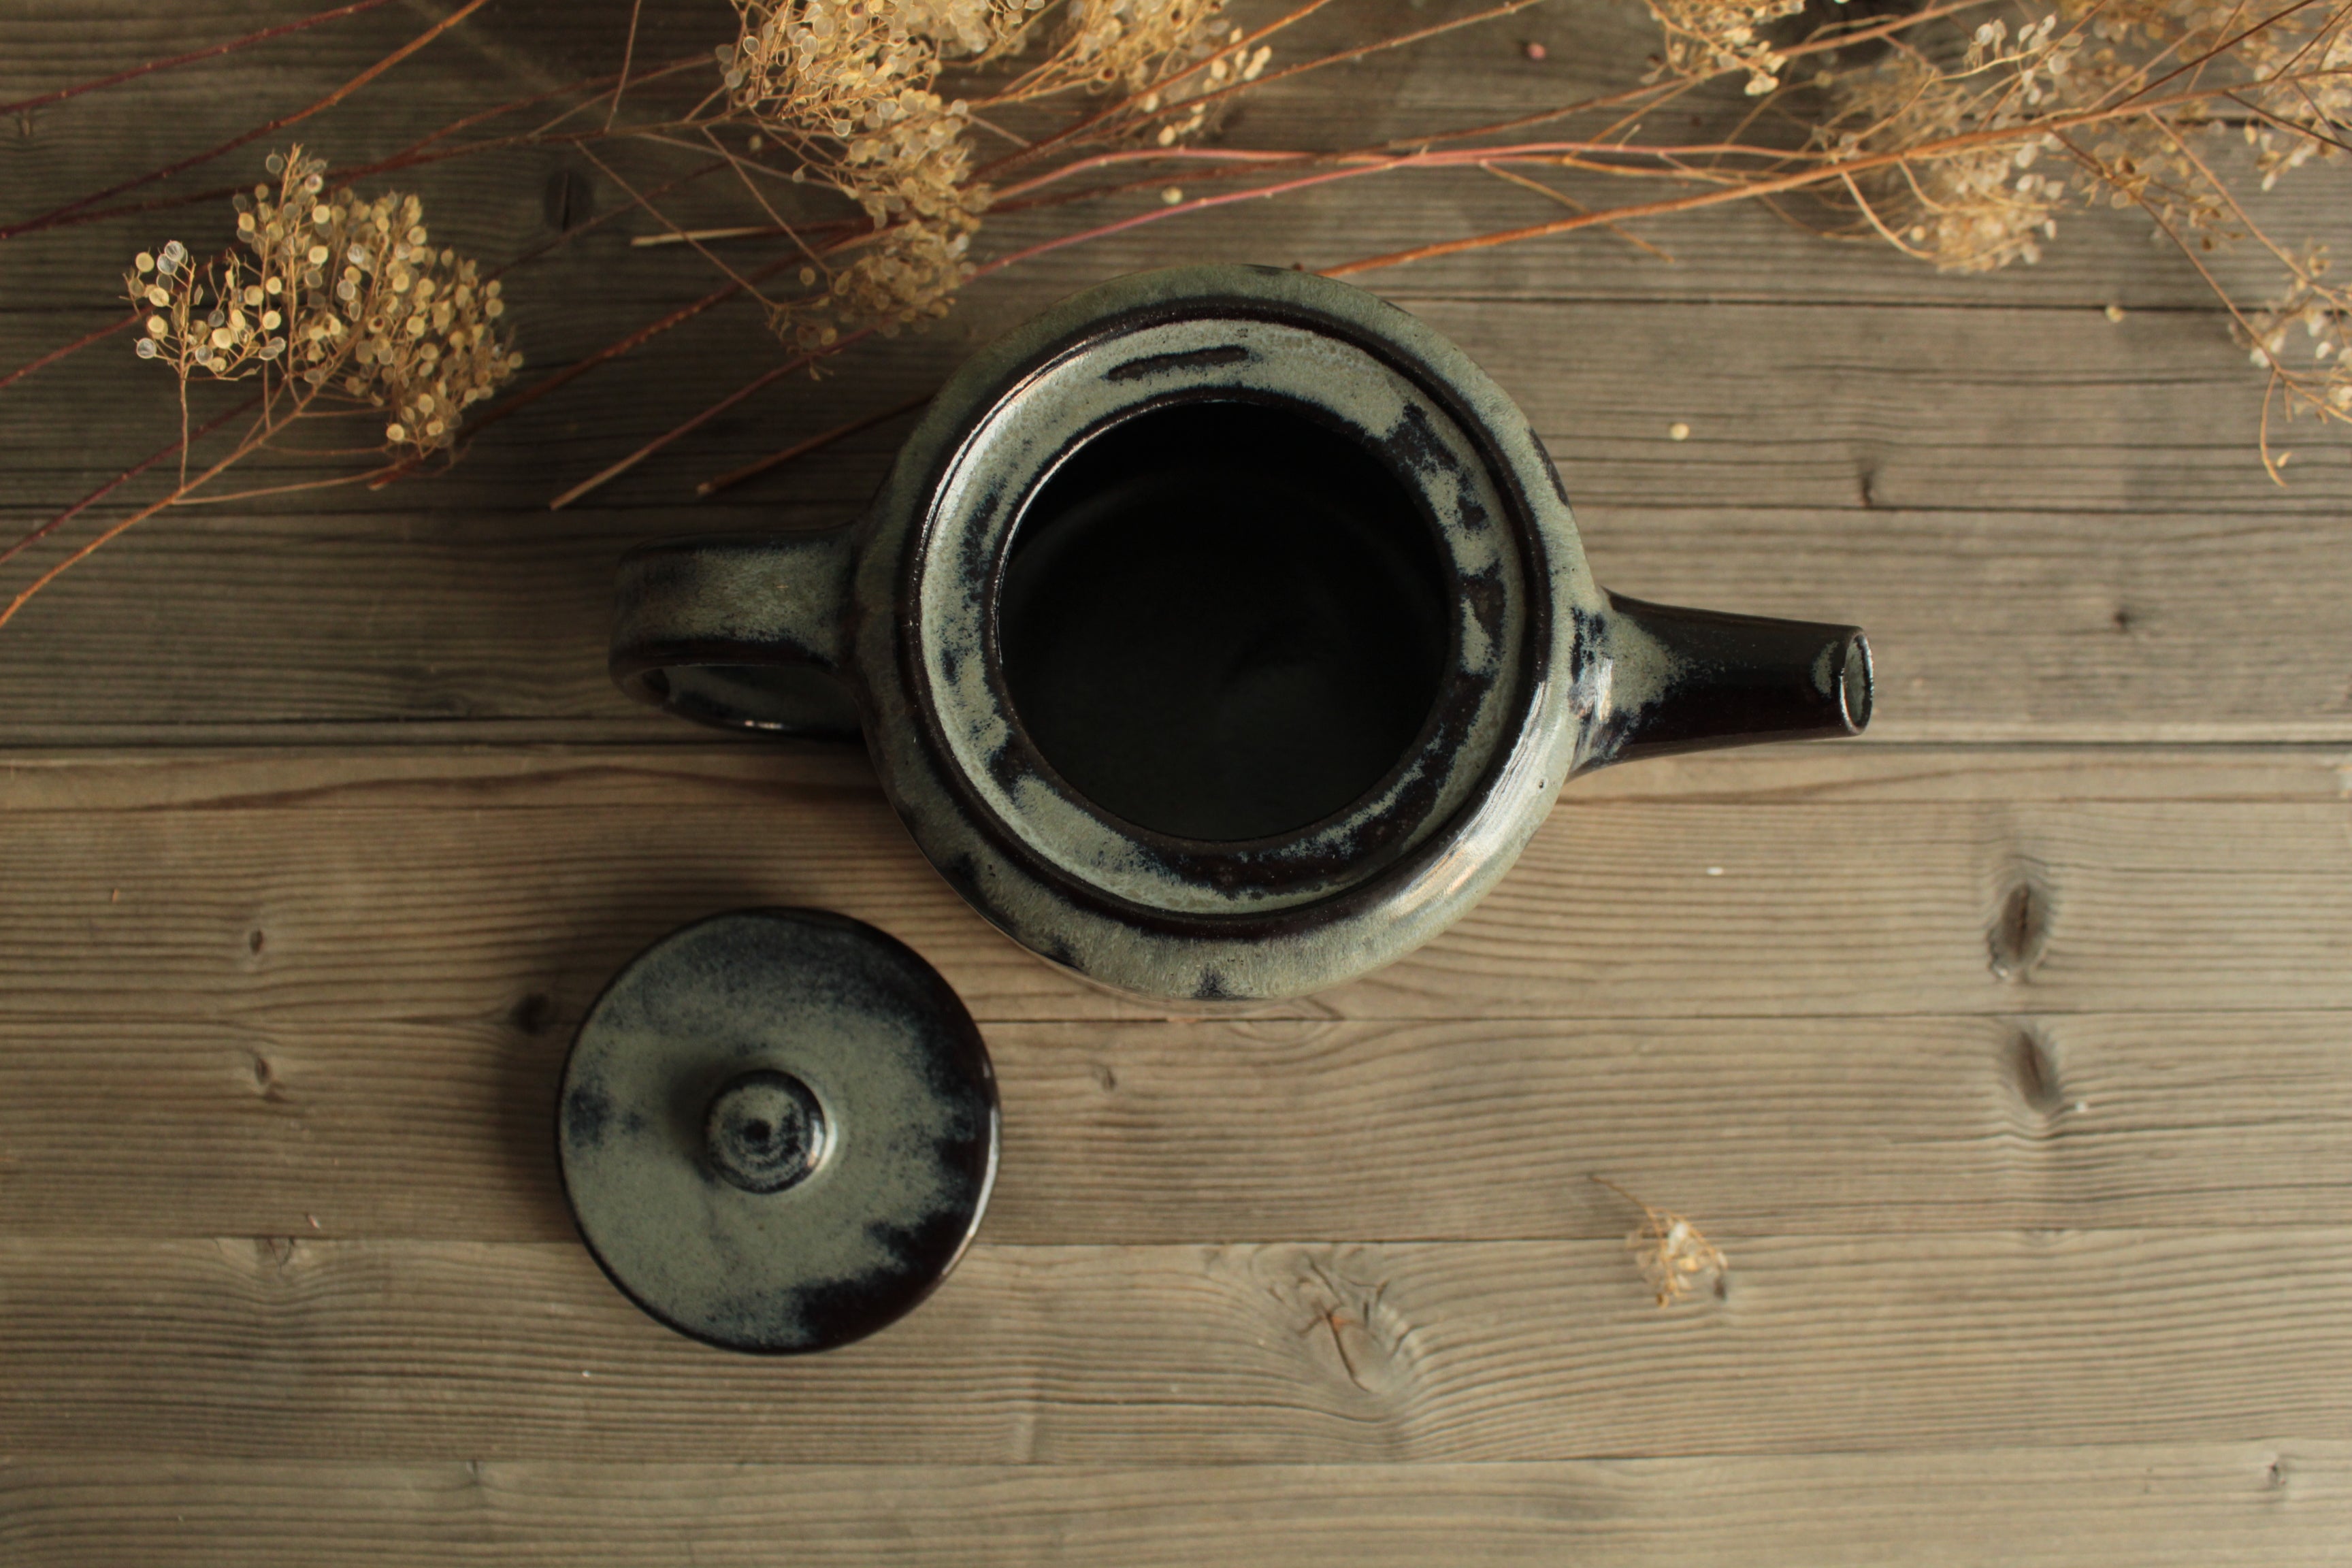 Black/Ciel Teapot